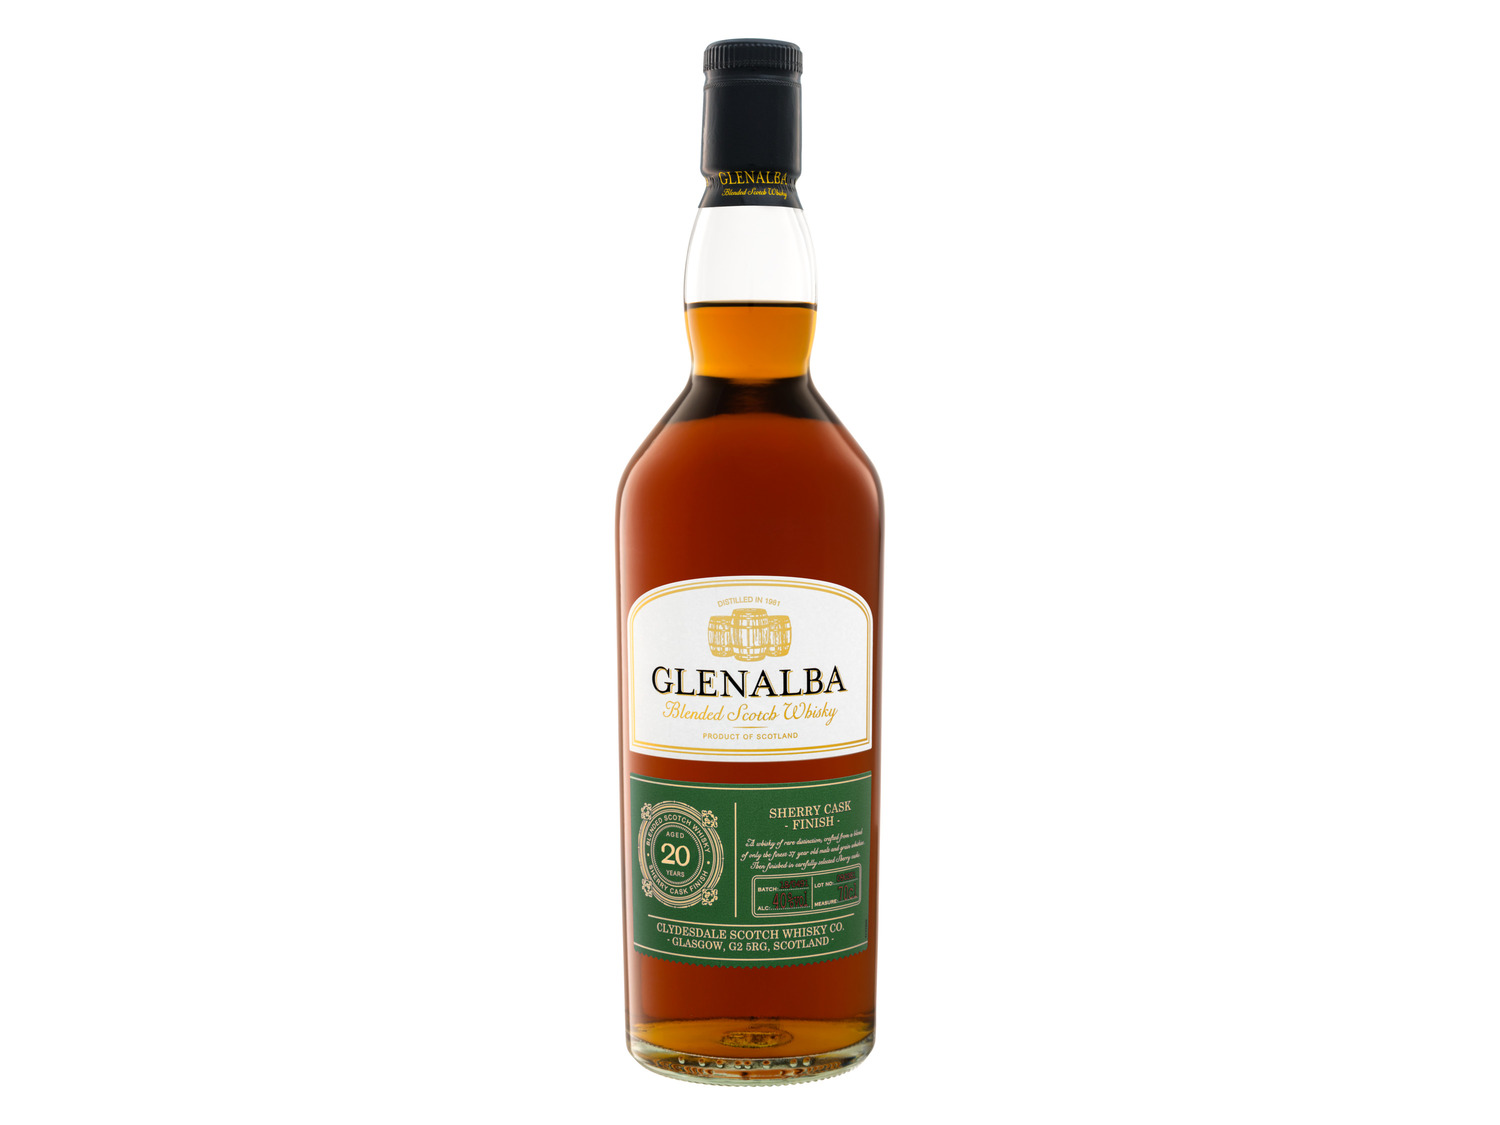 Glenalba Blended Scotch Whisky Sherry Cask Finish 20 J… | Whisky